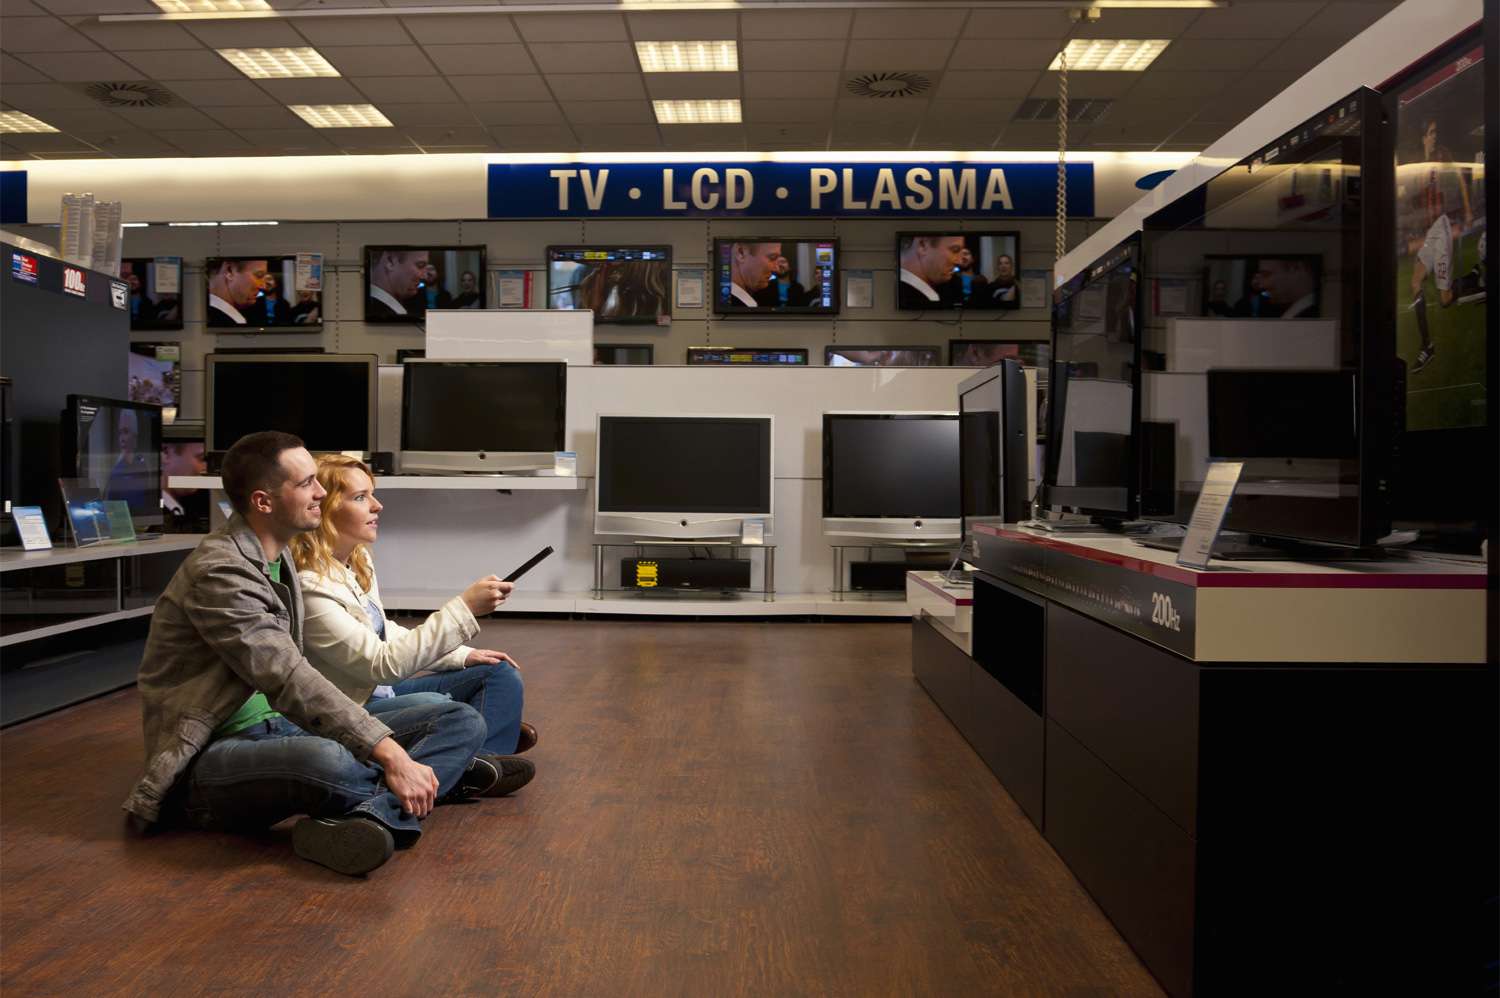 Stel dat tv's controleert: lcd versus plasma